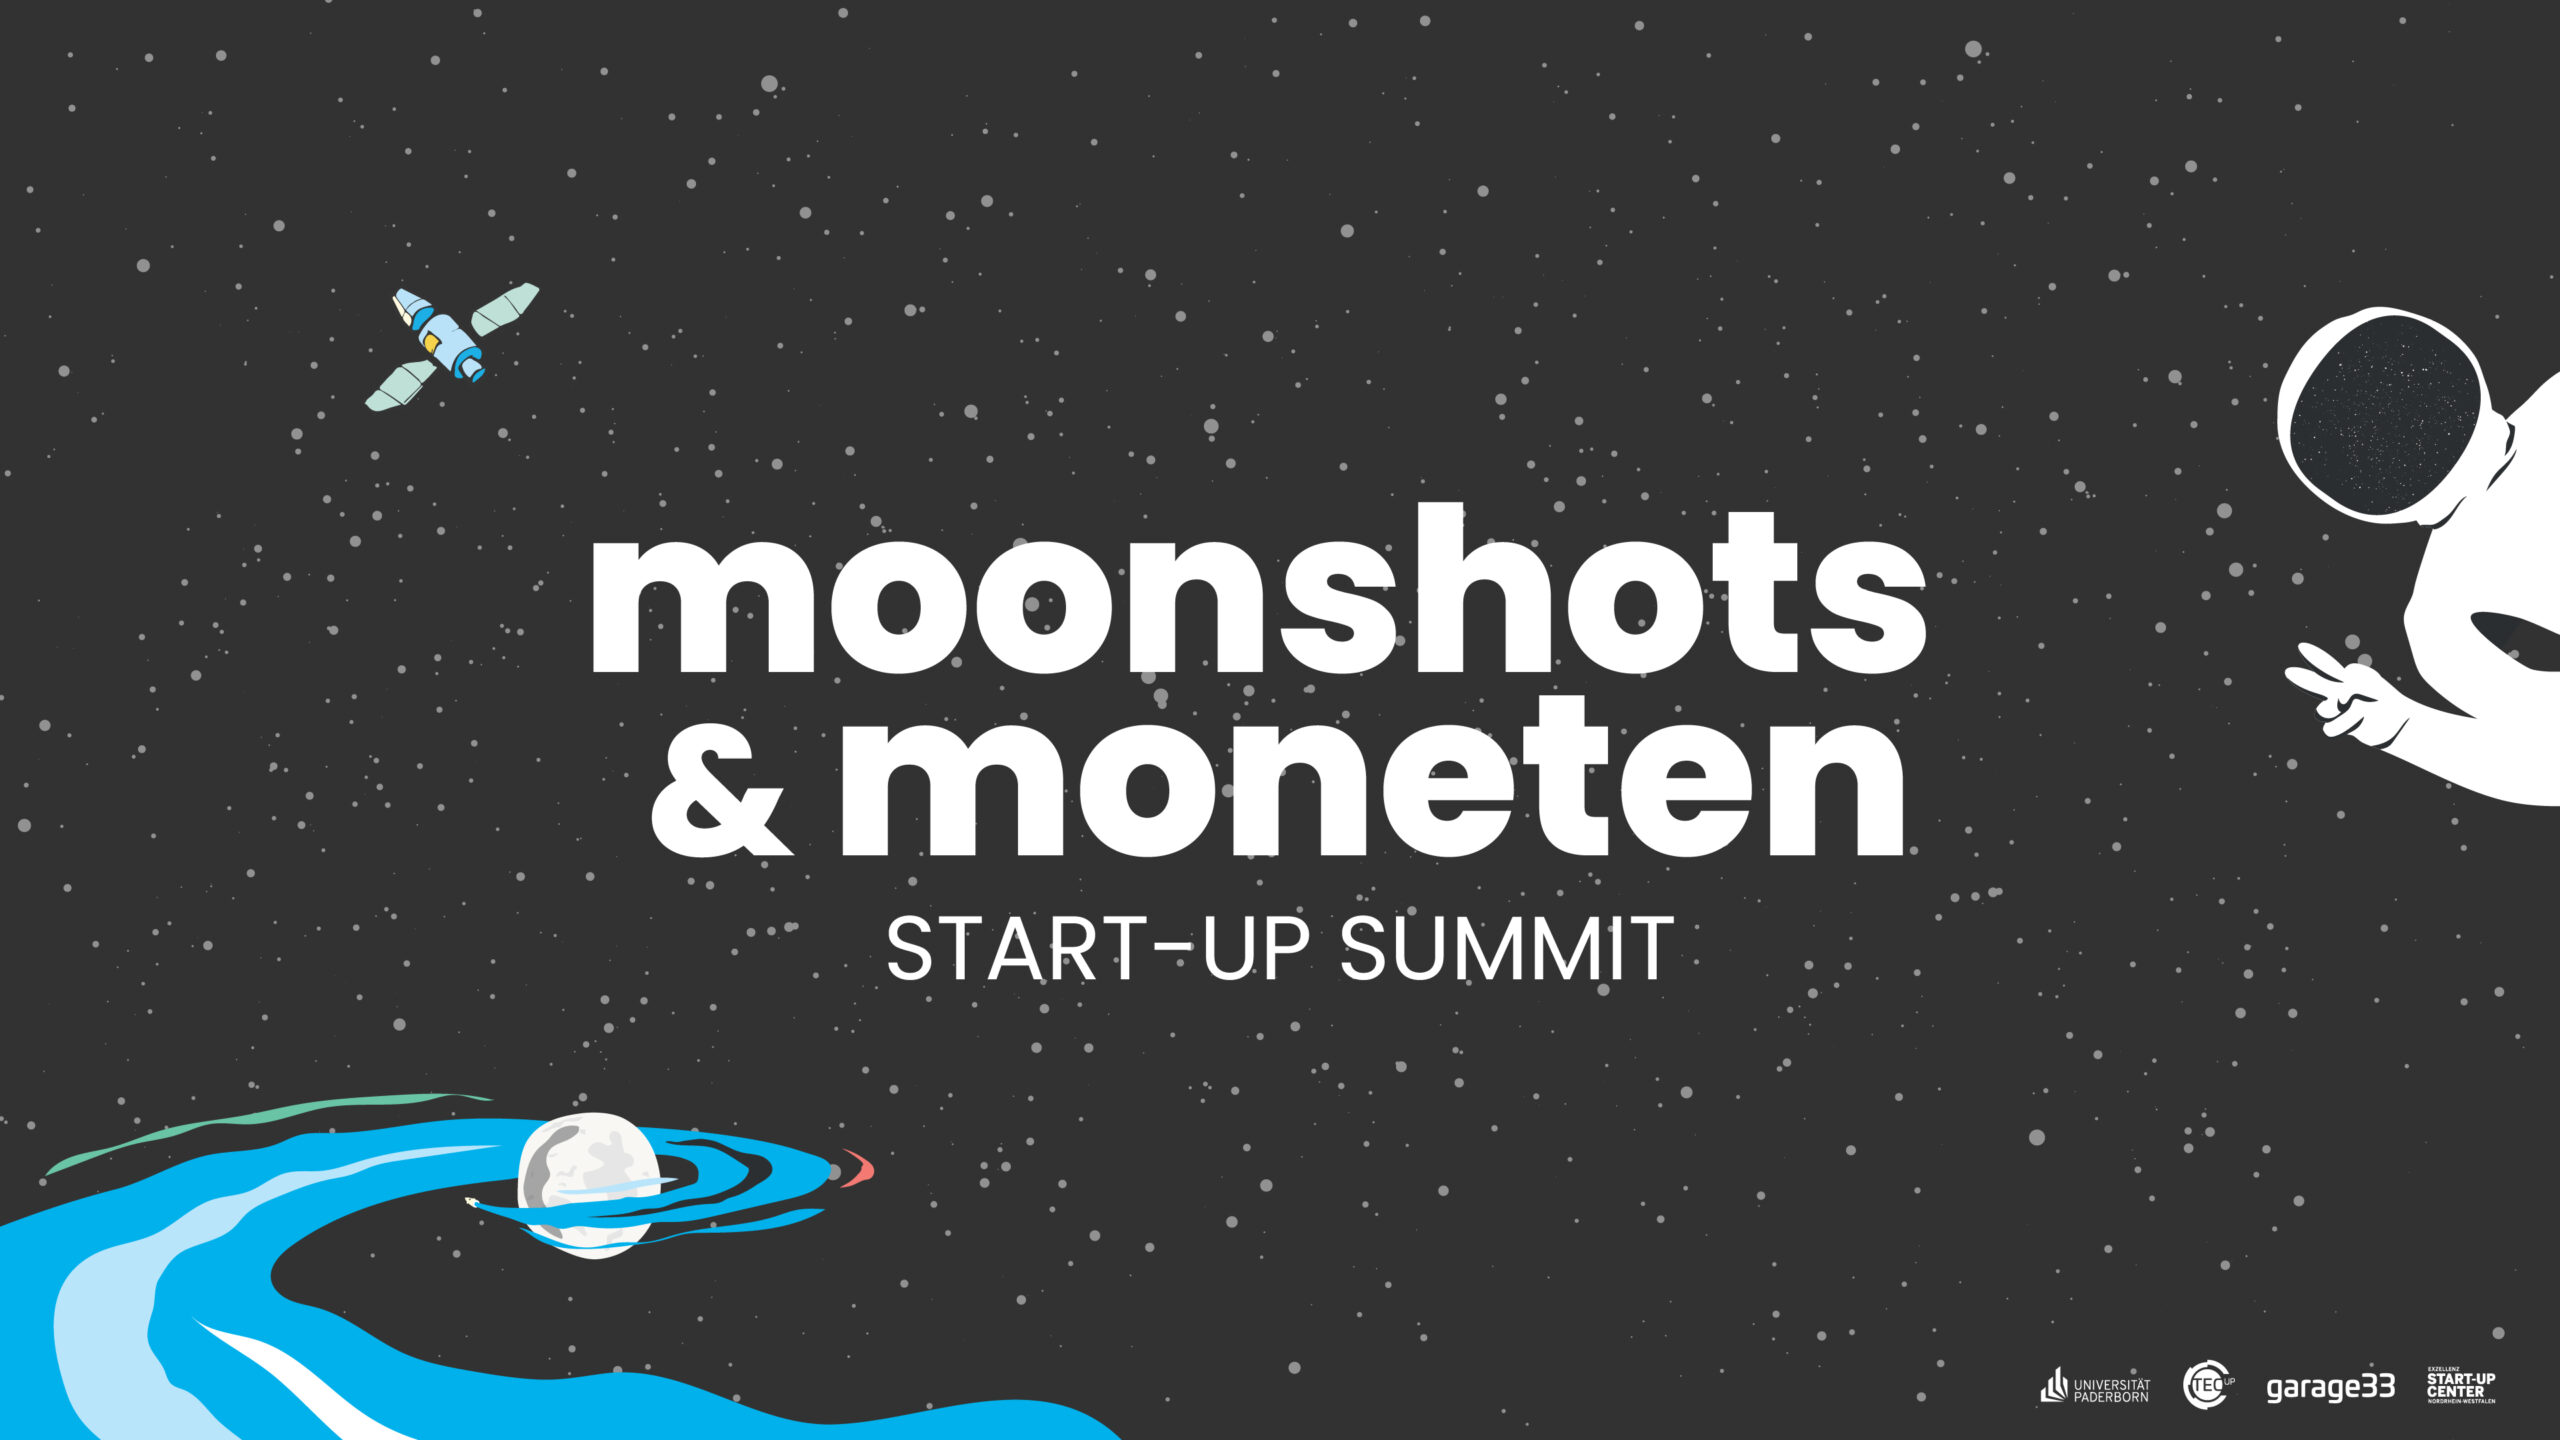 Moonshots & Moneten Summit